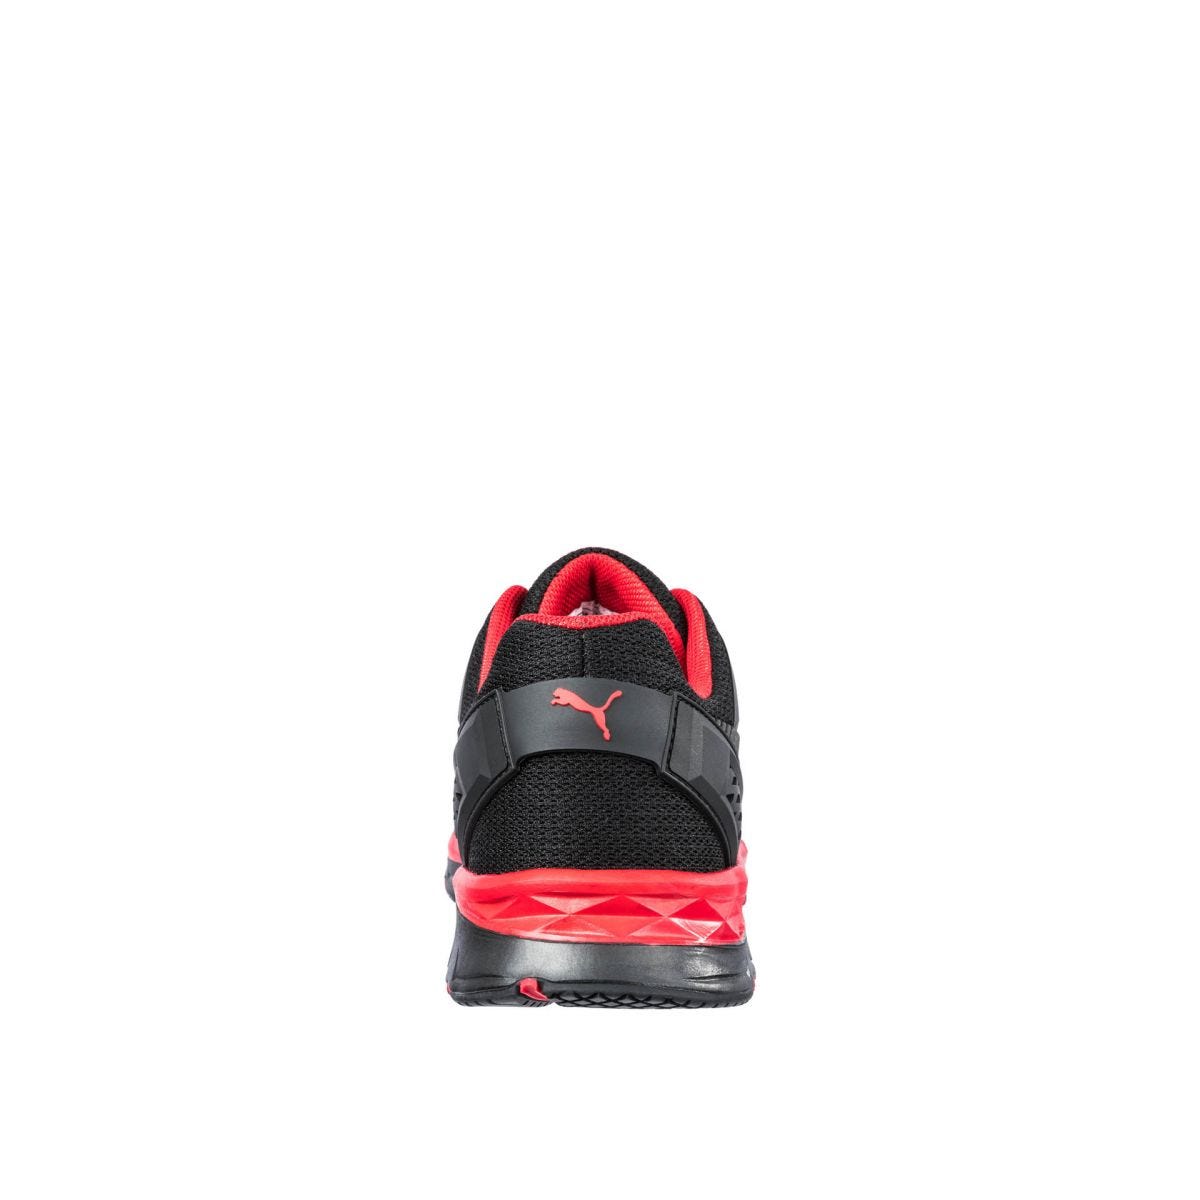 Chaussures de sécurité Fuse Motion 2.0 low S1P ESD HRO SRC rouge - Puma - Taille 45 1